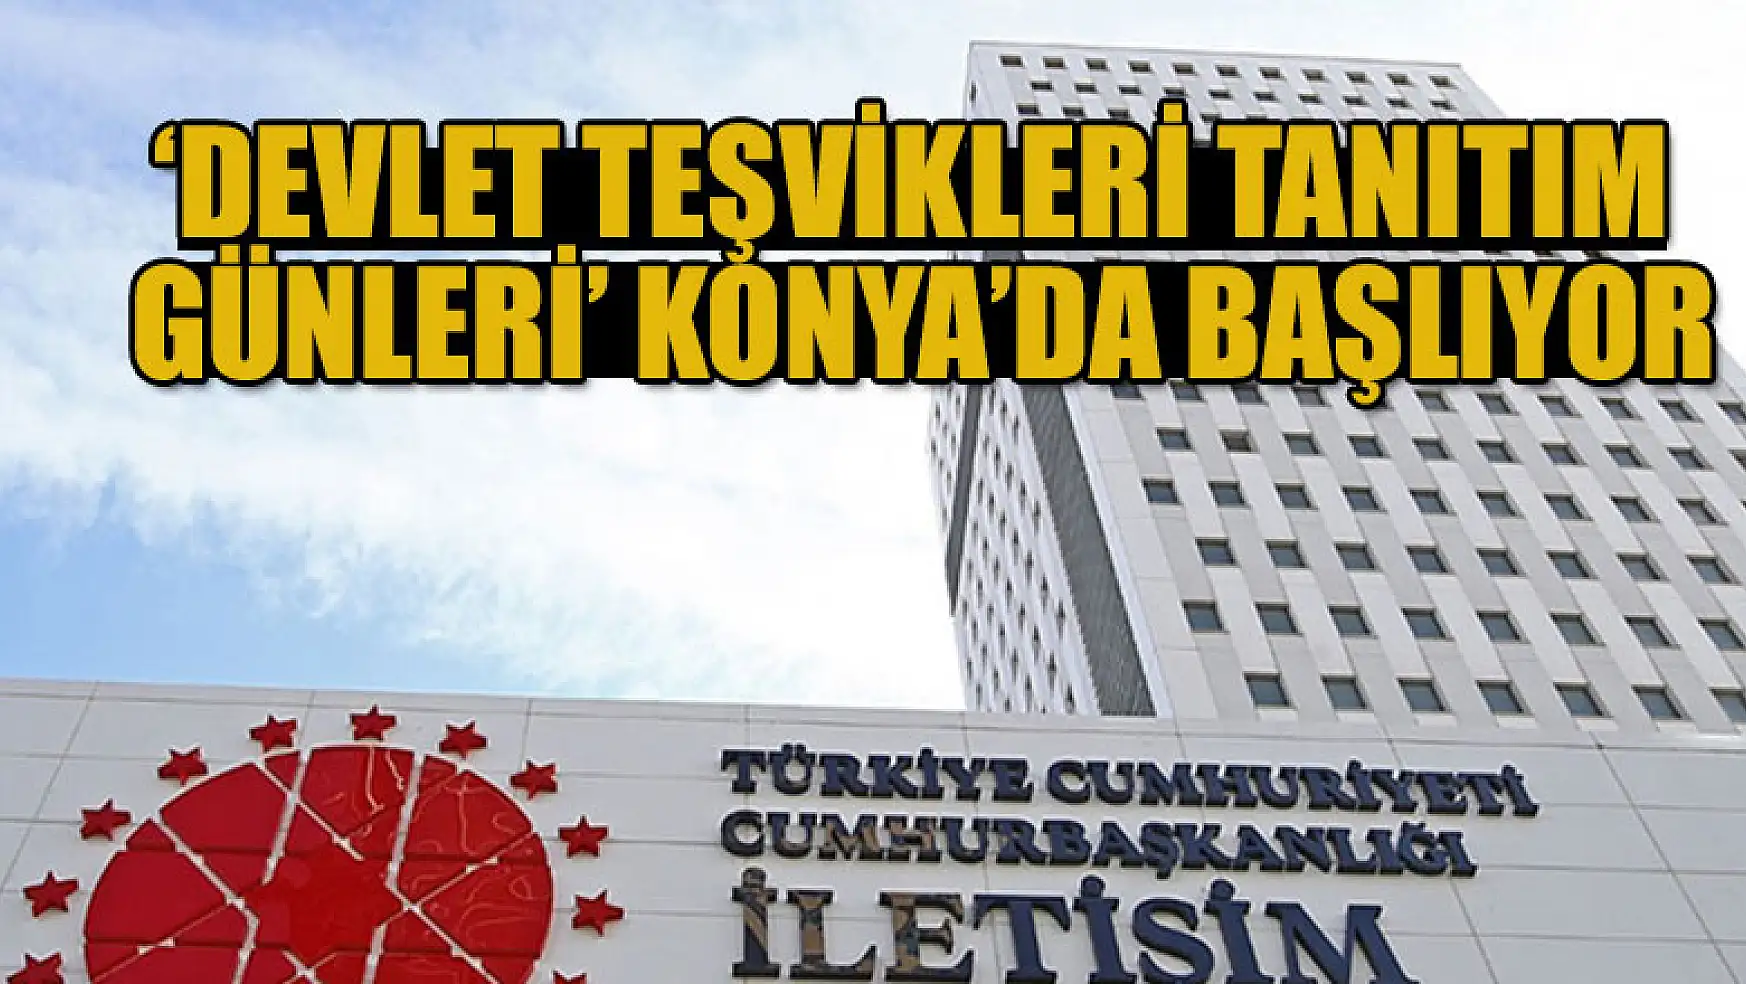 'Devlet Teşvikleri Tanıtım Günleri' Konya'da başlıyor